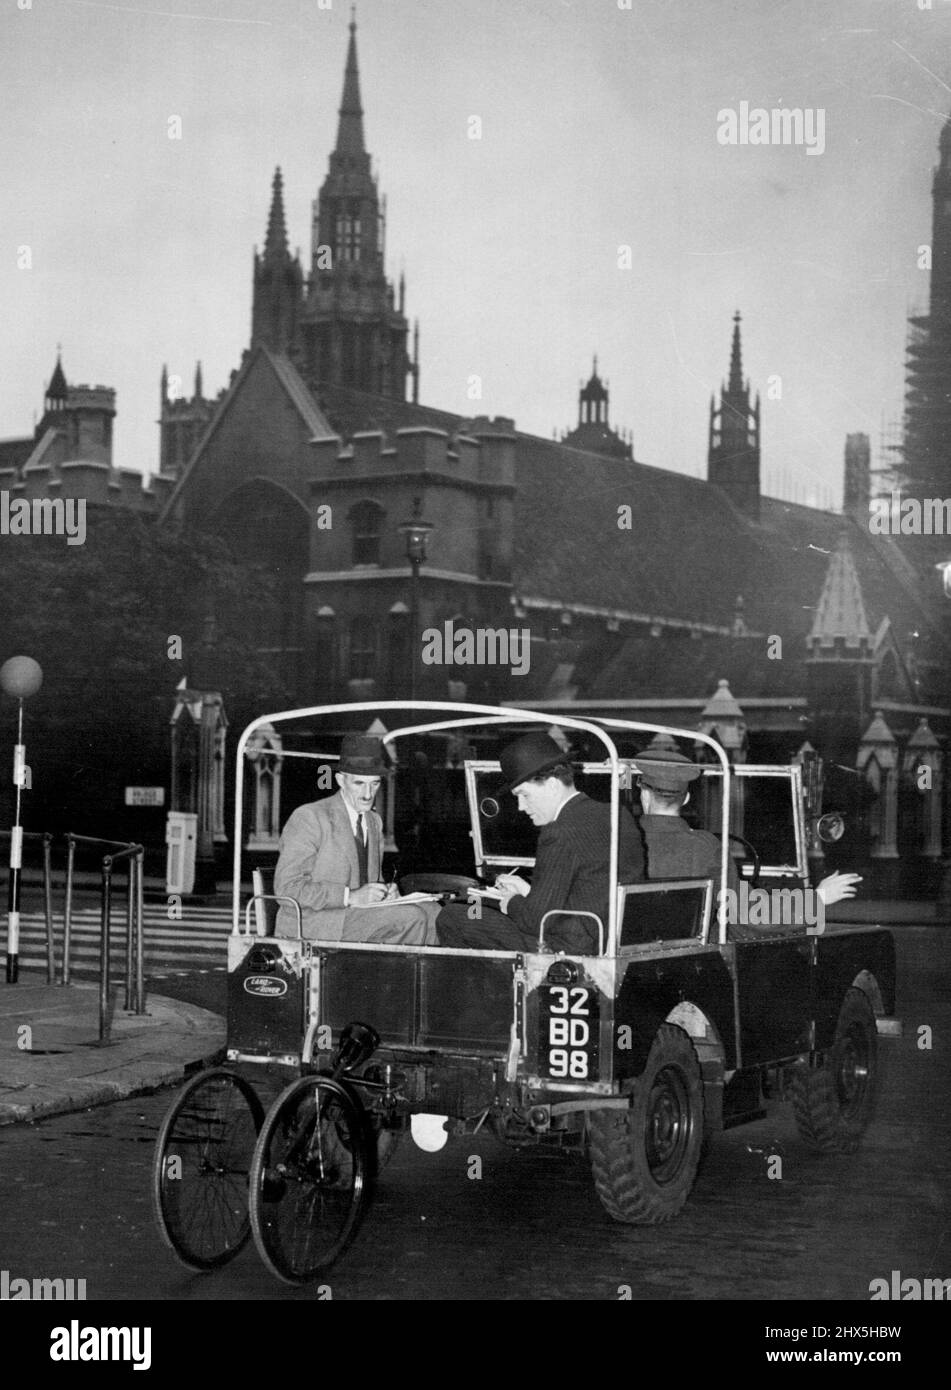 Le Coronometer. Des milliers d'employés qui étaient avant le petit-déjeuner se sont mis à lancer des regards sur un camion de l'armée qui traînait quelques roues noires fatiguées de caoutchouc et un long poteau à travers les rues principales désertes de Londres jusqu'à aujourd'hui. C'est ce que le War Office a appelé le Coronometer, il mesurait la route du couronnement de l'année prochaine. 29 juillet 1952. (Photo par Daily Mail Contract Picture). Banque D'Images